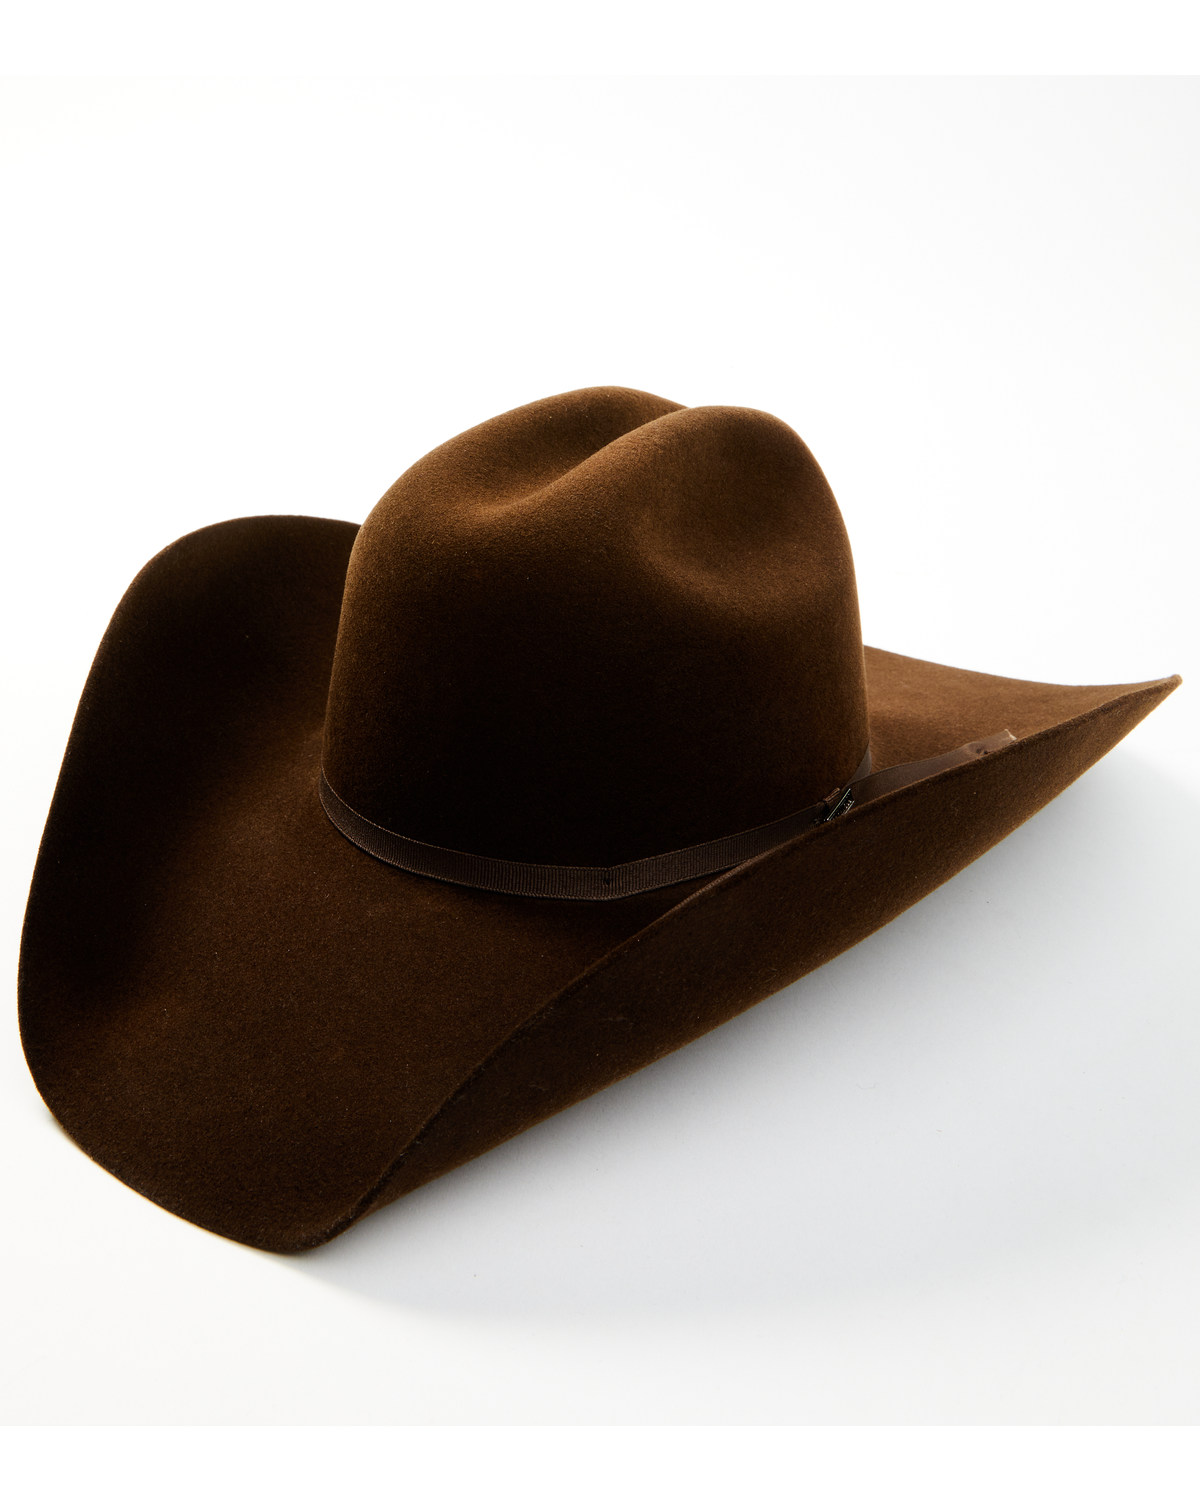 Serratelli 4X Felt Cowboy Hat